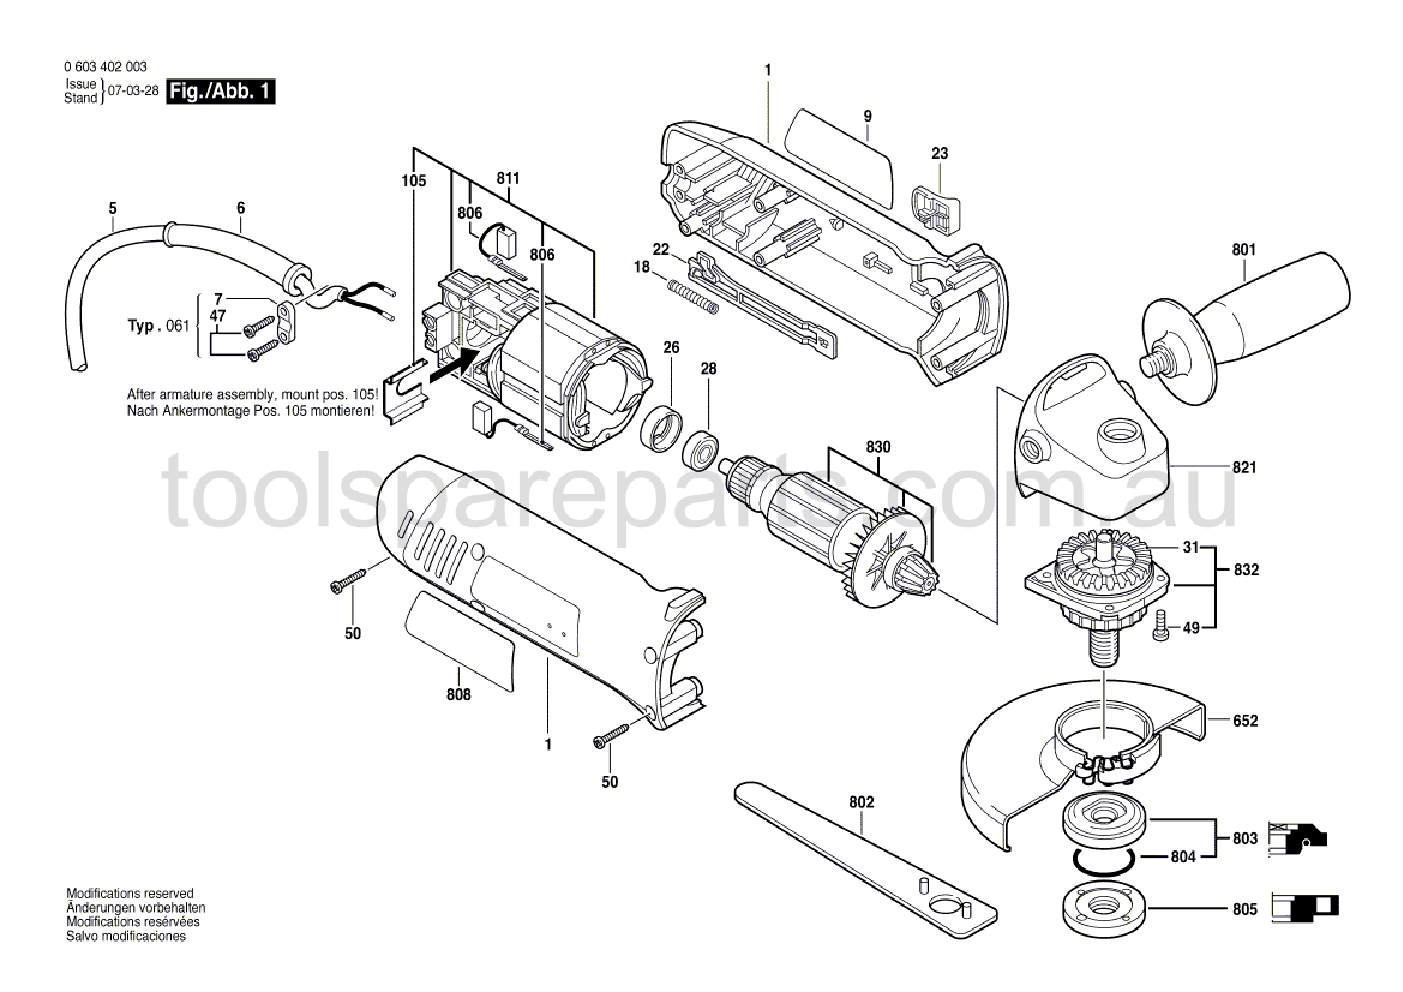 Bosch PWS 7-115 0603402061  Diagram 1